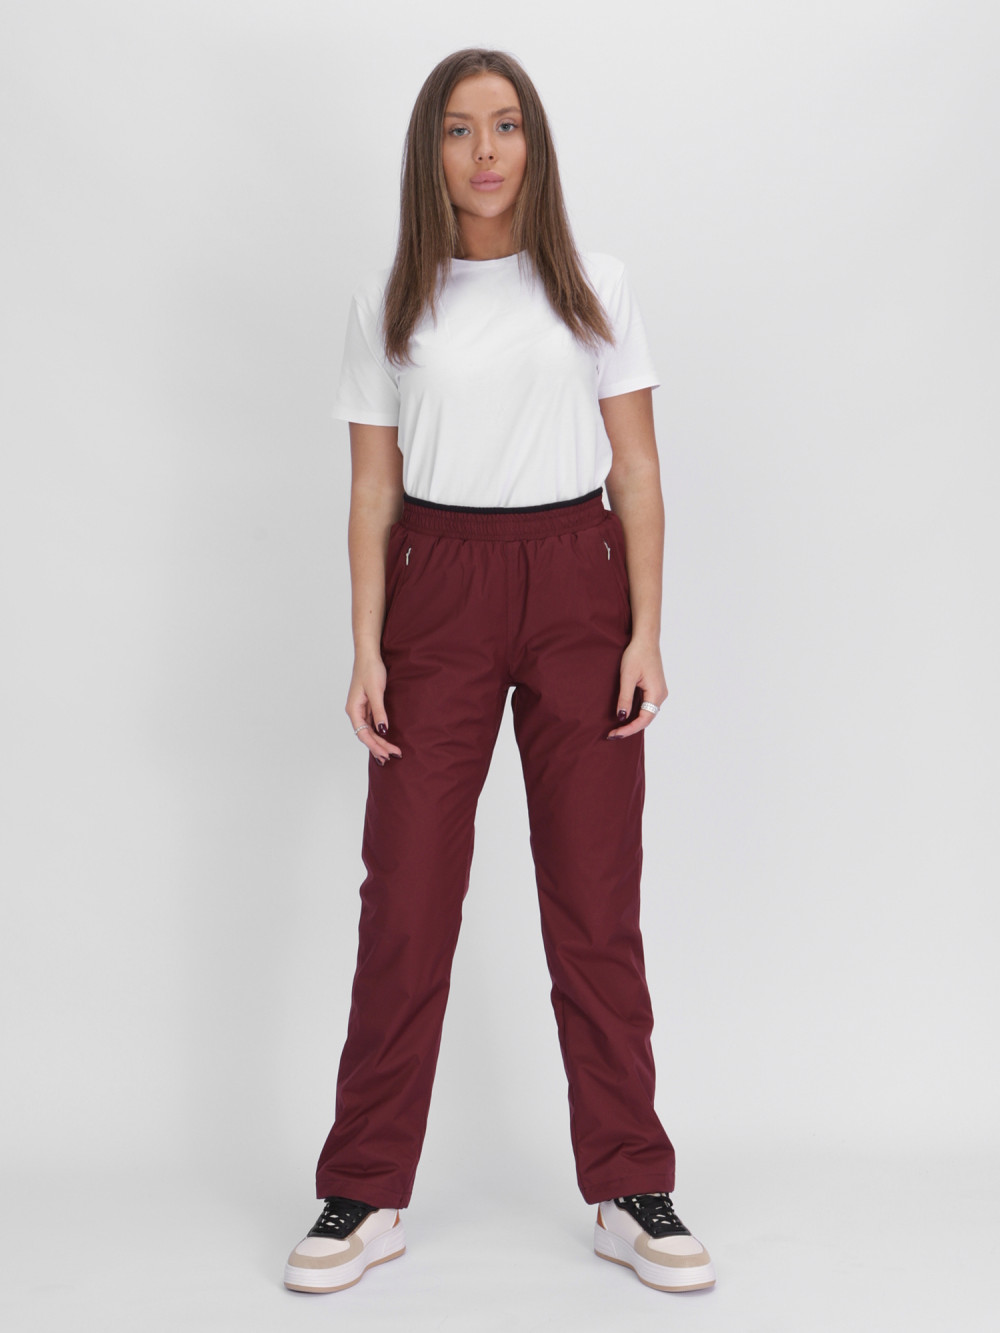 Купить оптом Утепленные спортивные брюки женские бордового цвета 88149Bo в Екатеринбурге